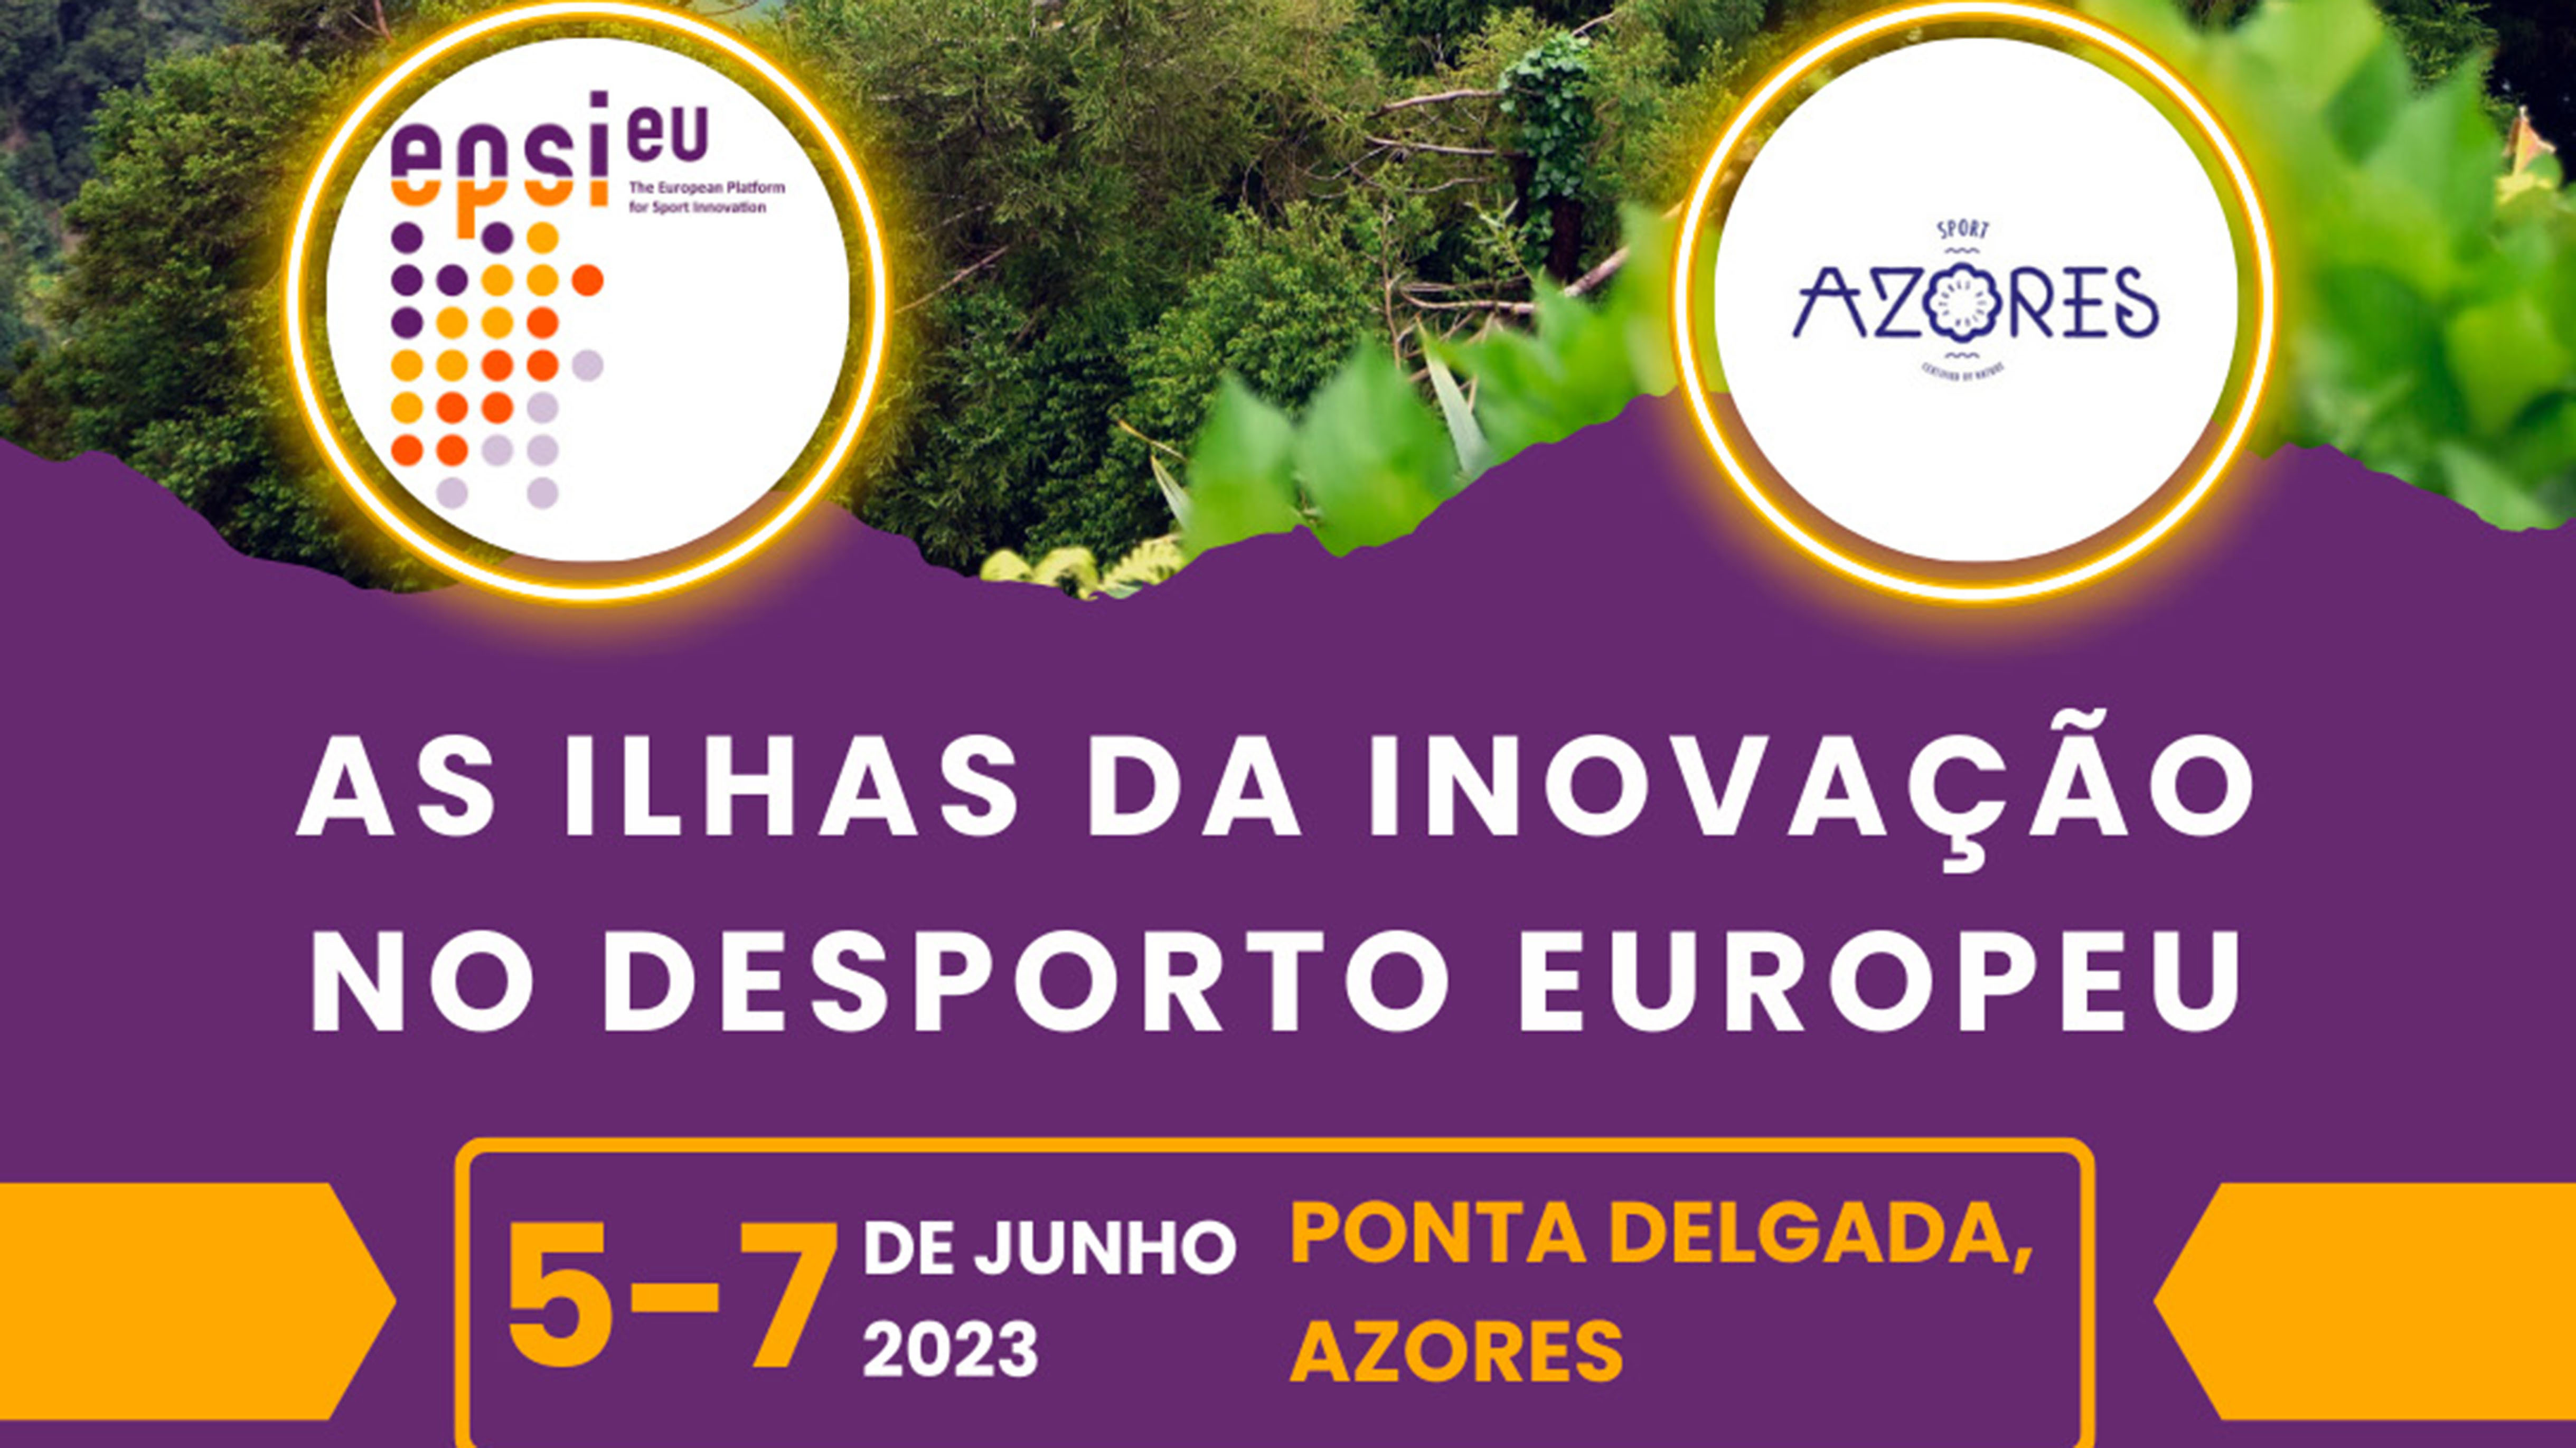 Governo dos Açores organiza encontro europeu sobre inovação no desporto